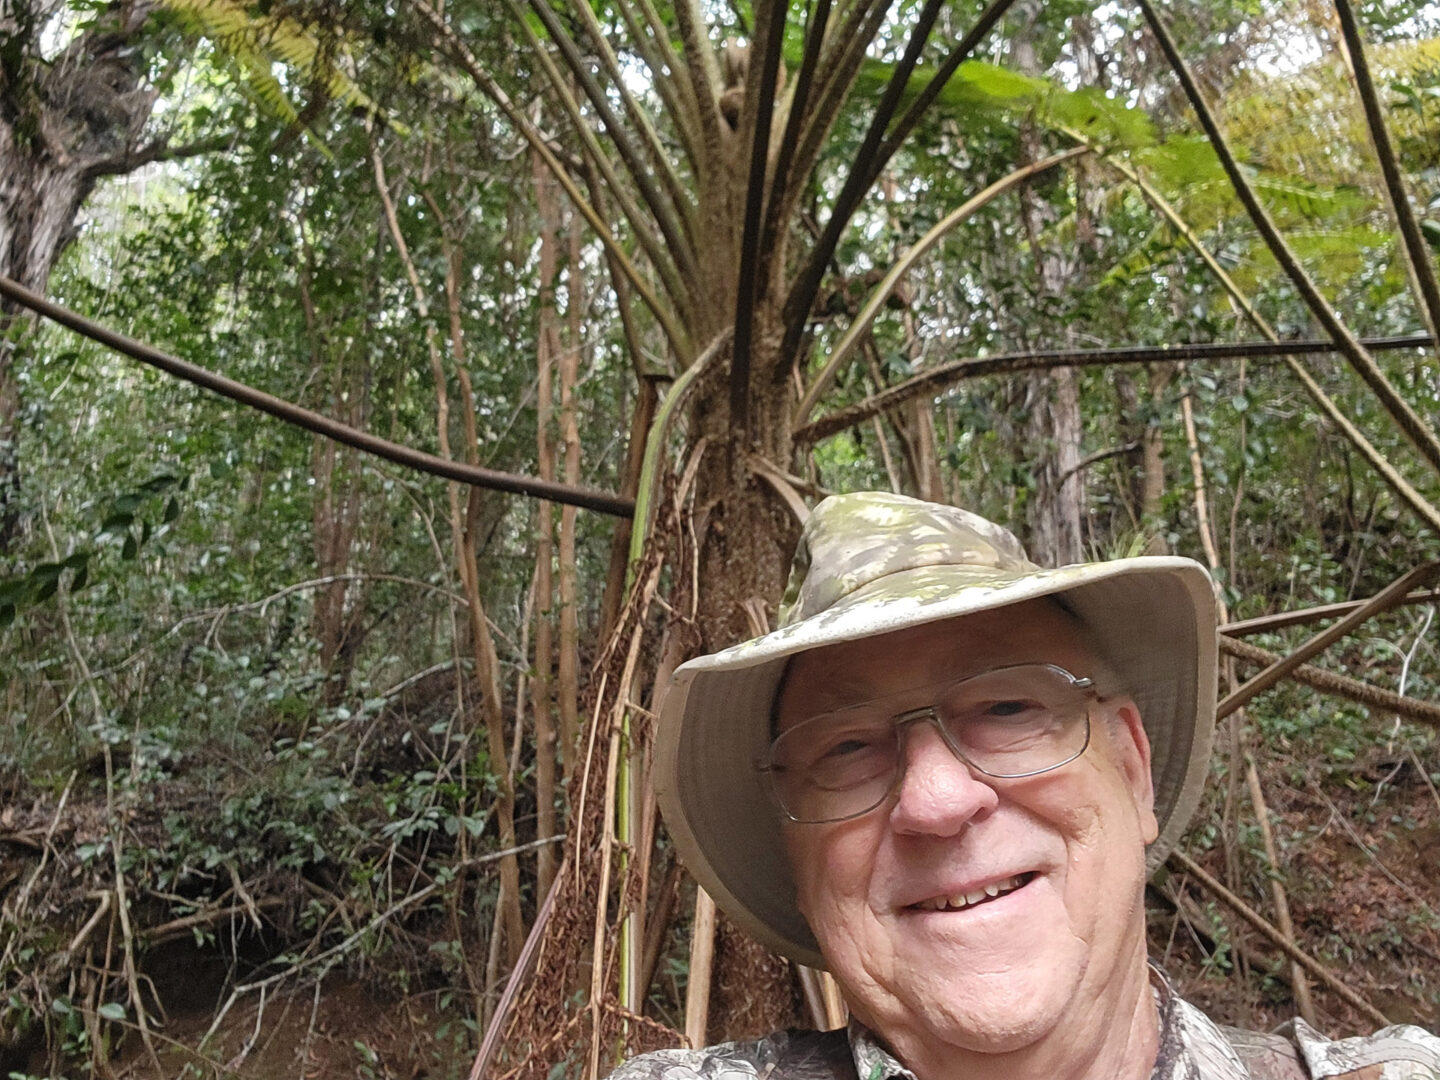 Deane, Australian Tree Ferns in the background